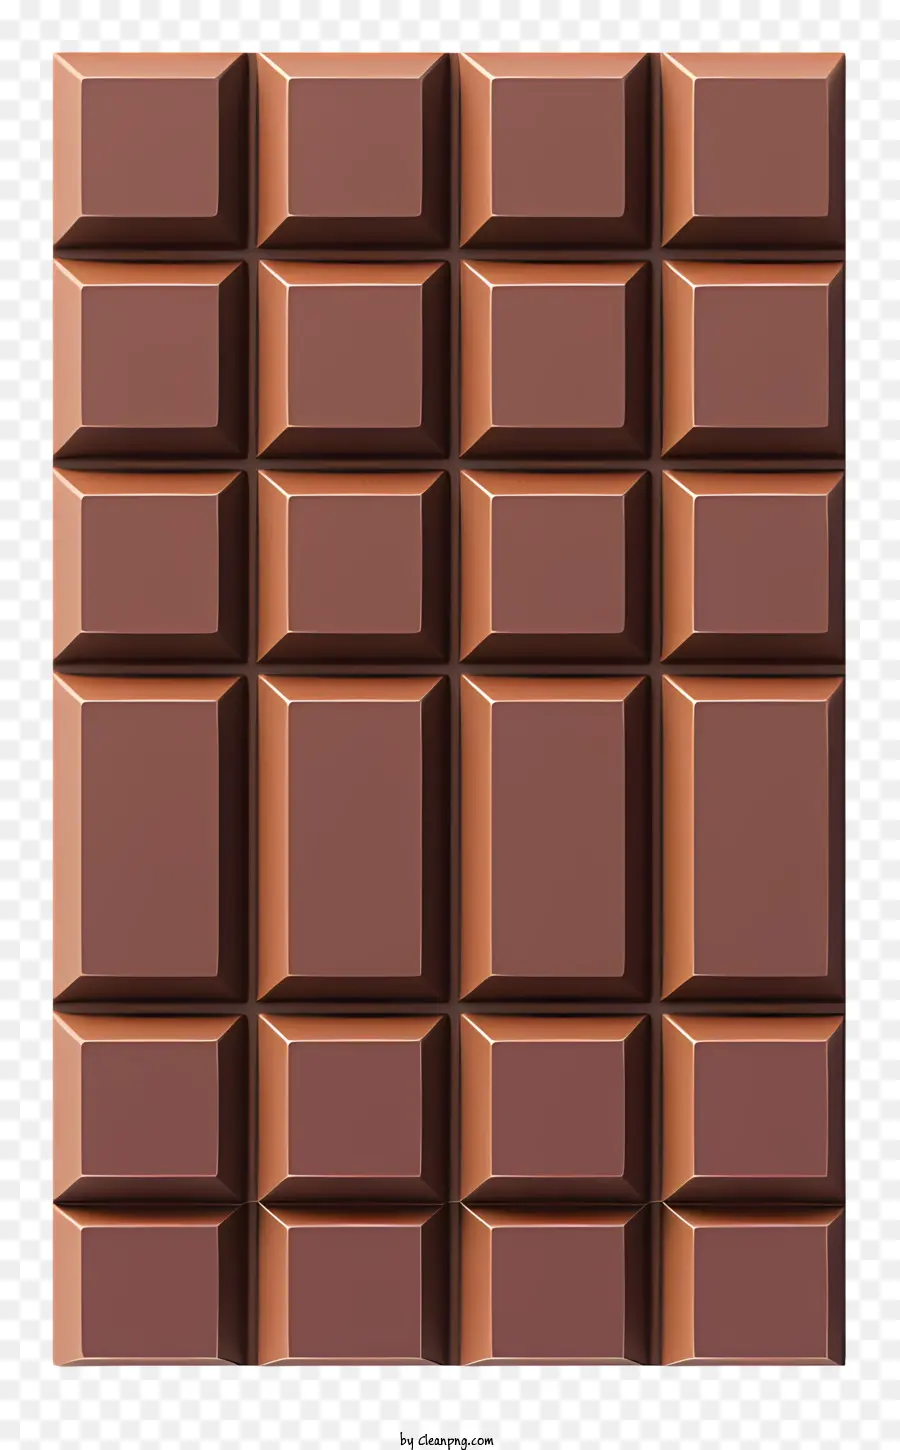 Terretta di cioccolato al cioccolato in barra al cioccolato in 3D al cioccolato al cioccolato al cioccolato al cioccolato. - Modello 3D di barretta di cioccolato con quadrati rialzati